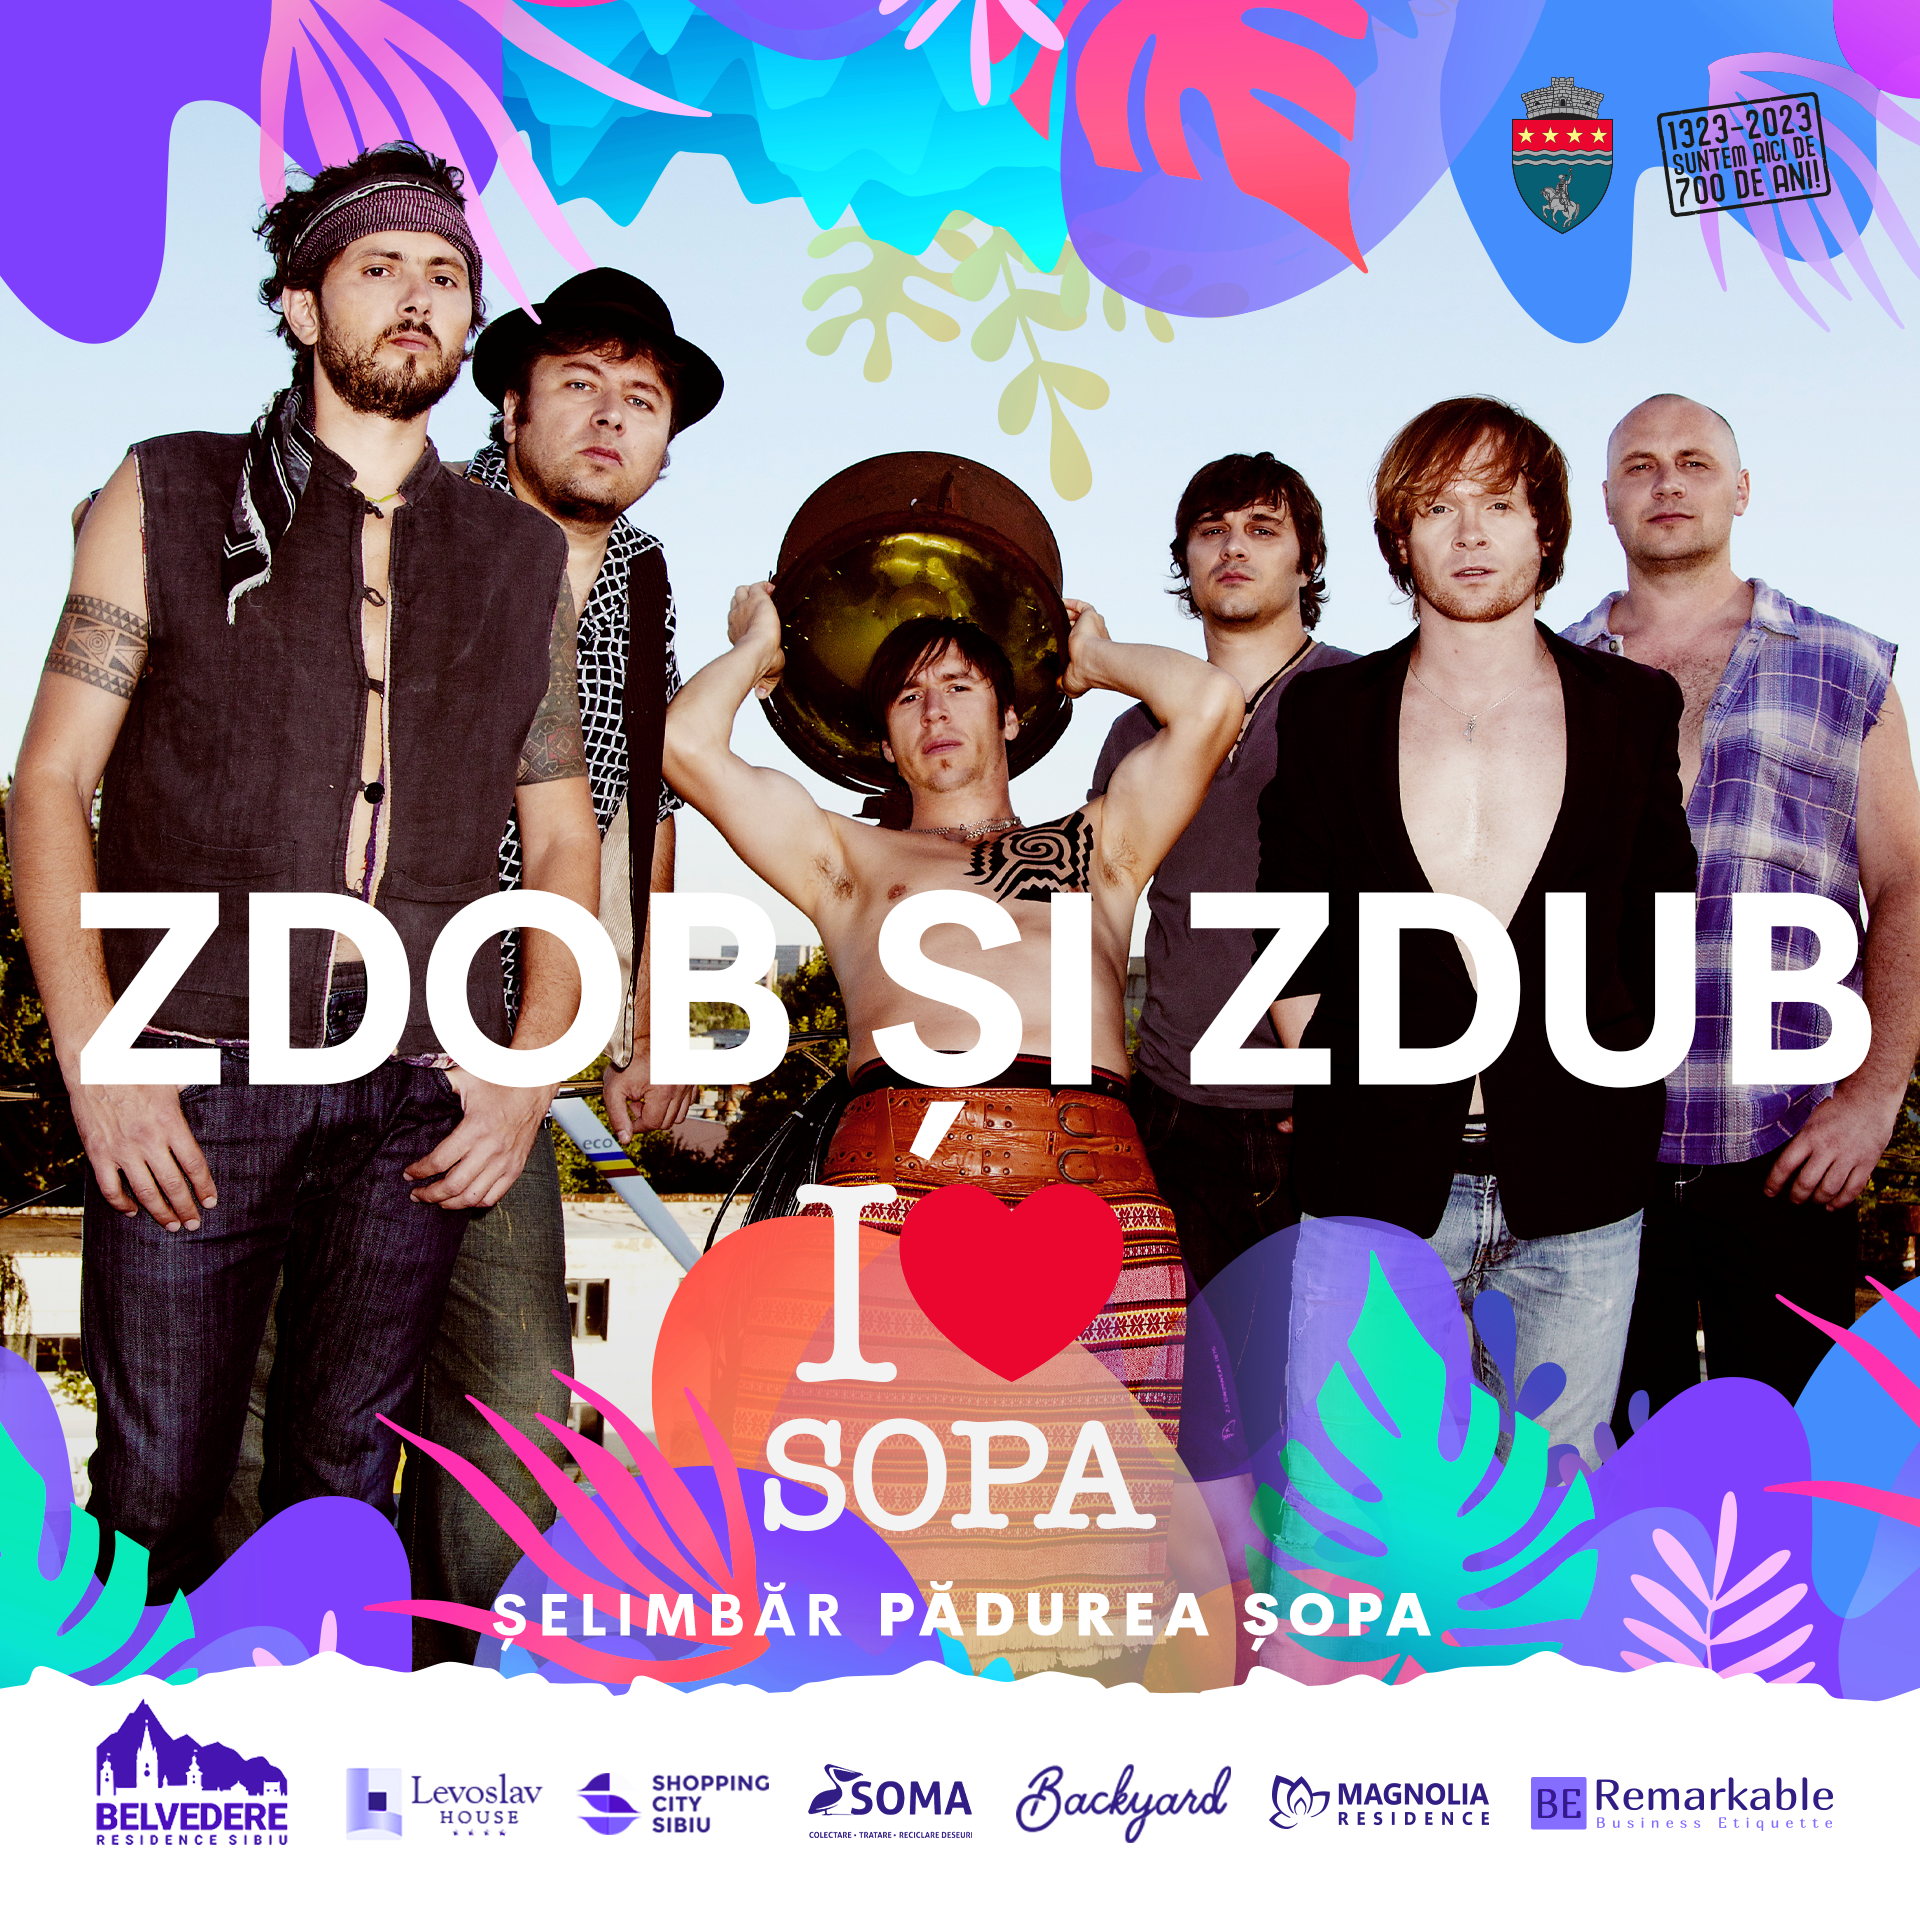 i love șopa, cel mai așteptat festival al verii în zona sibiului - concerte cu delia, zdob & zdub, macanache, mira, bitză, ami și mulți alții în pădurea șopa!